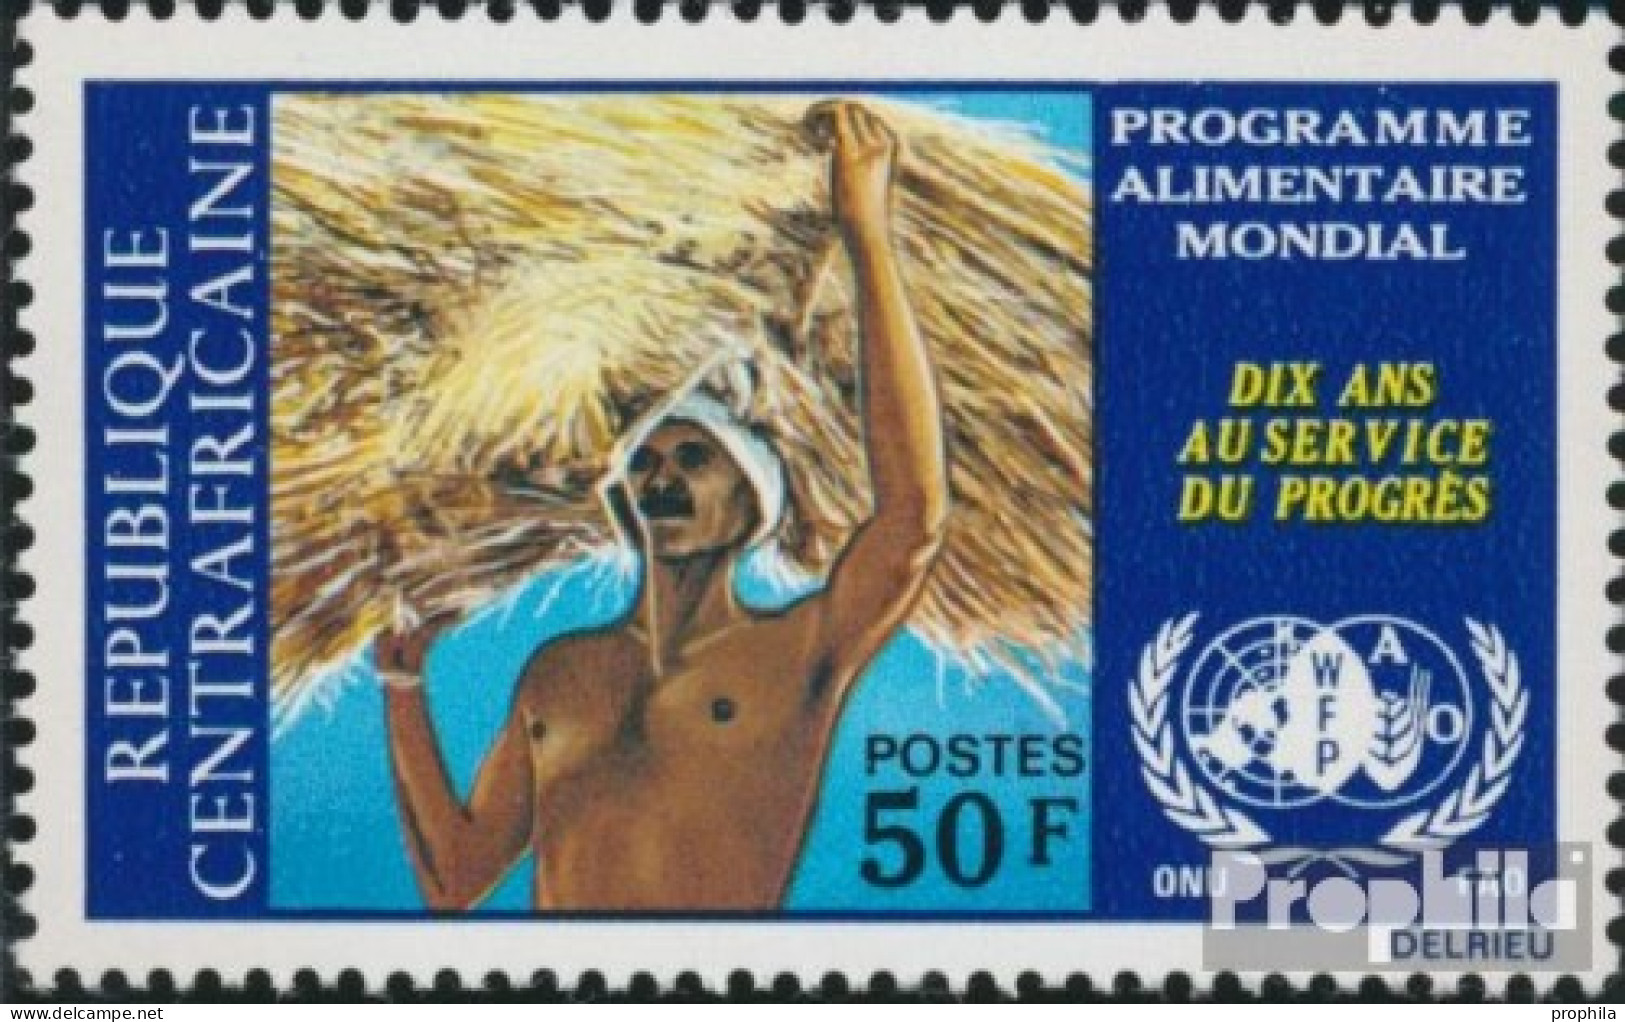 Zentralafrikanische Republik 311 (kompl.Ausg.) Postfrisch 1973 Welternährungsprogramm - Centraal-Afrikaanse Republiek